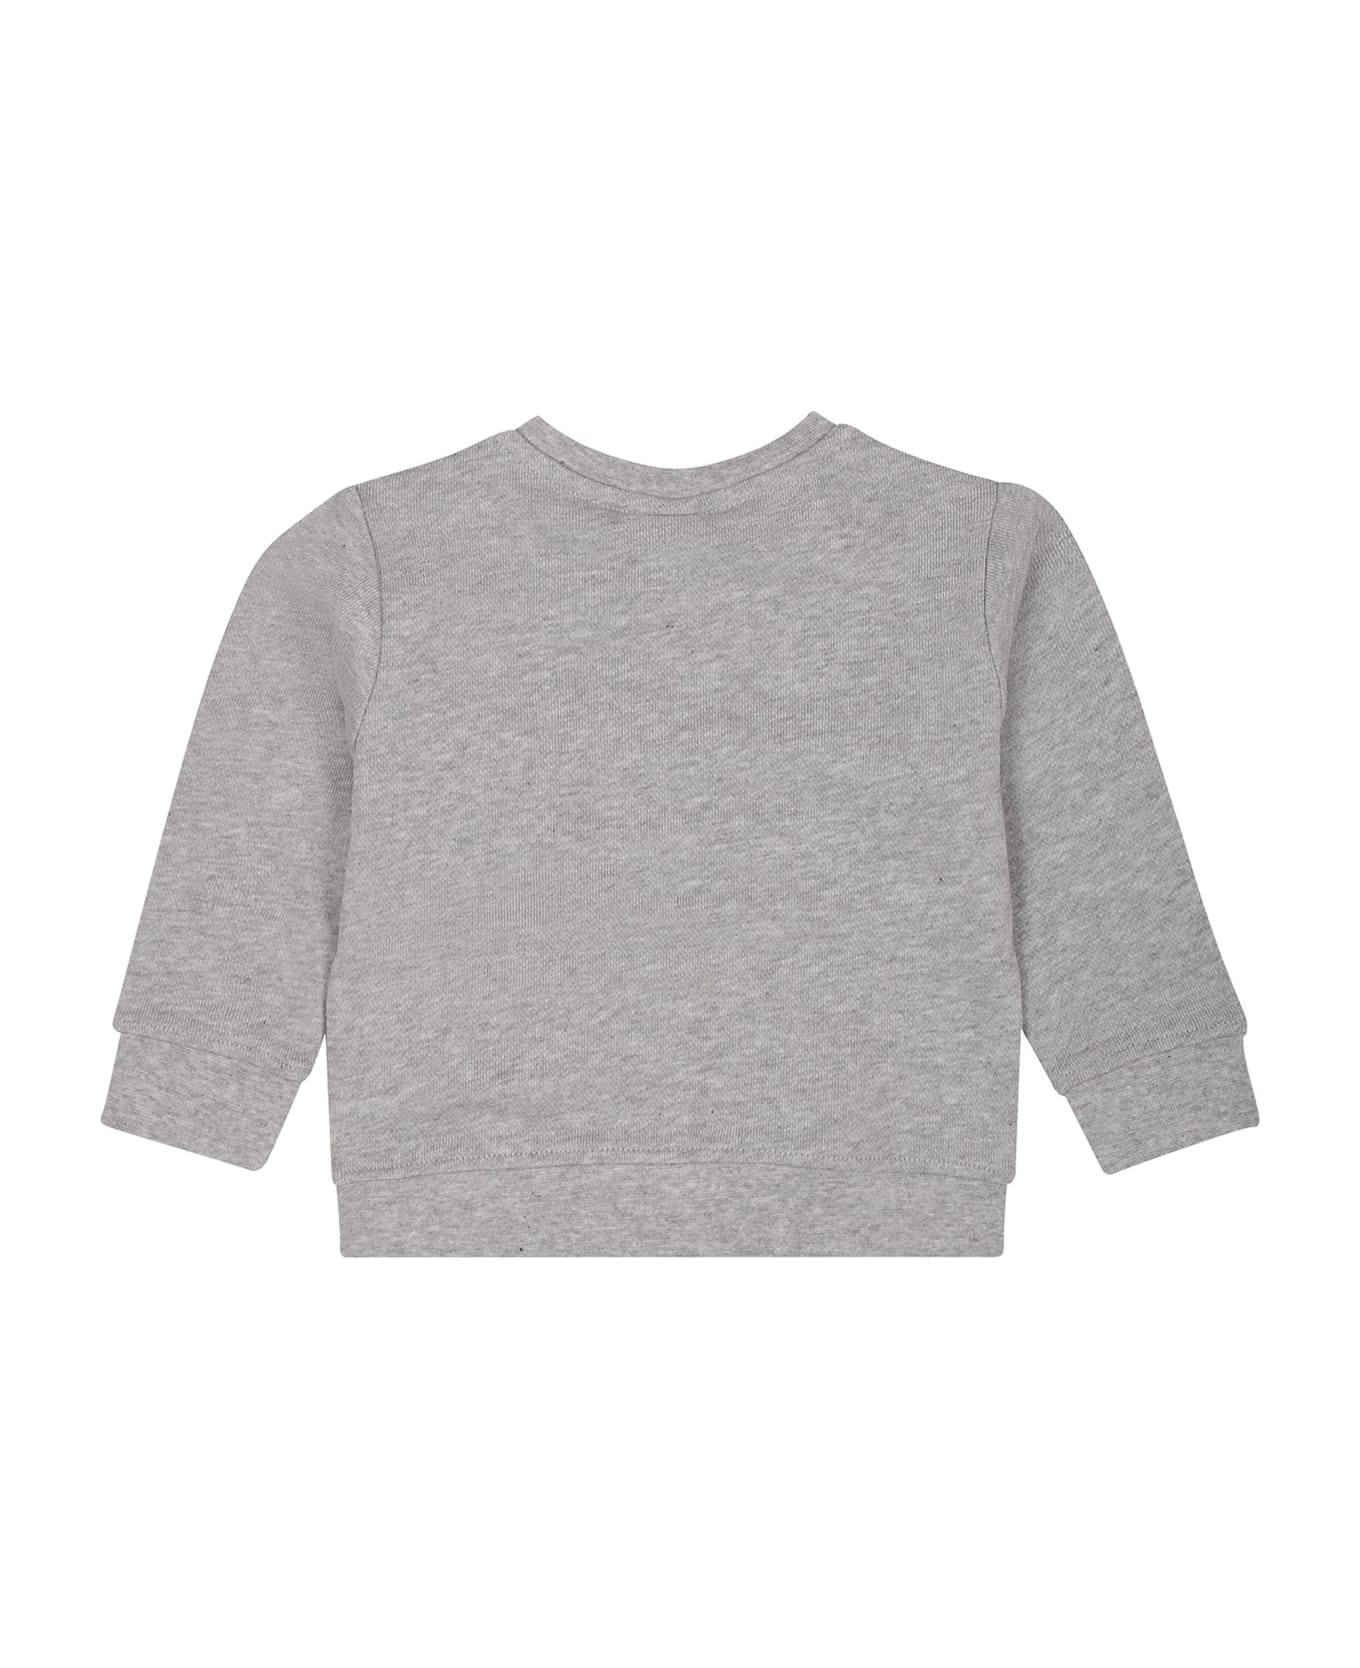 Stella McCartney Kids Grey Sweatshirt For Baby Boy With Hamburger Print - Grey ニットウェア＆スウェットシャツ